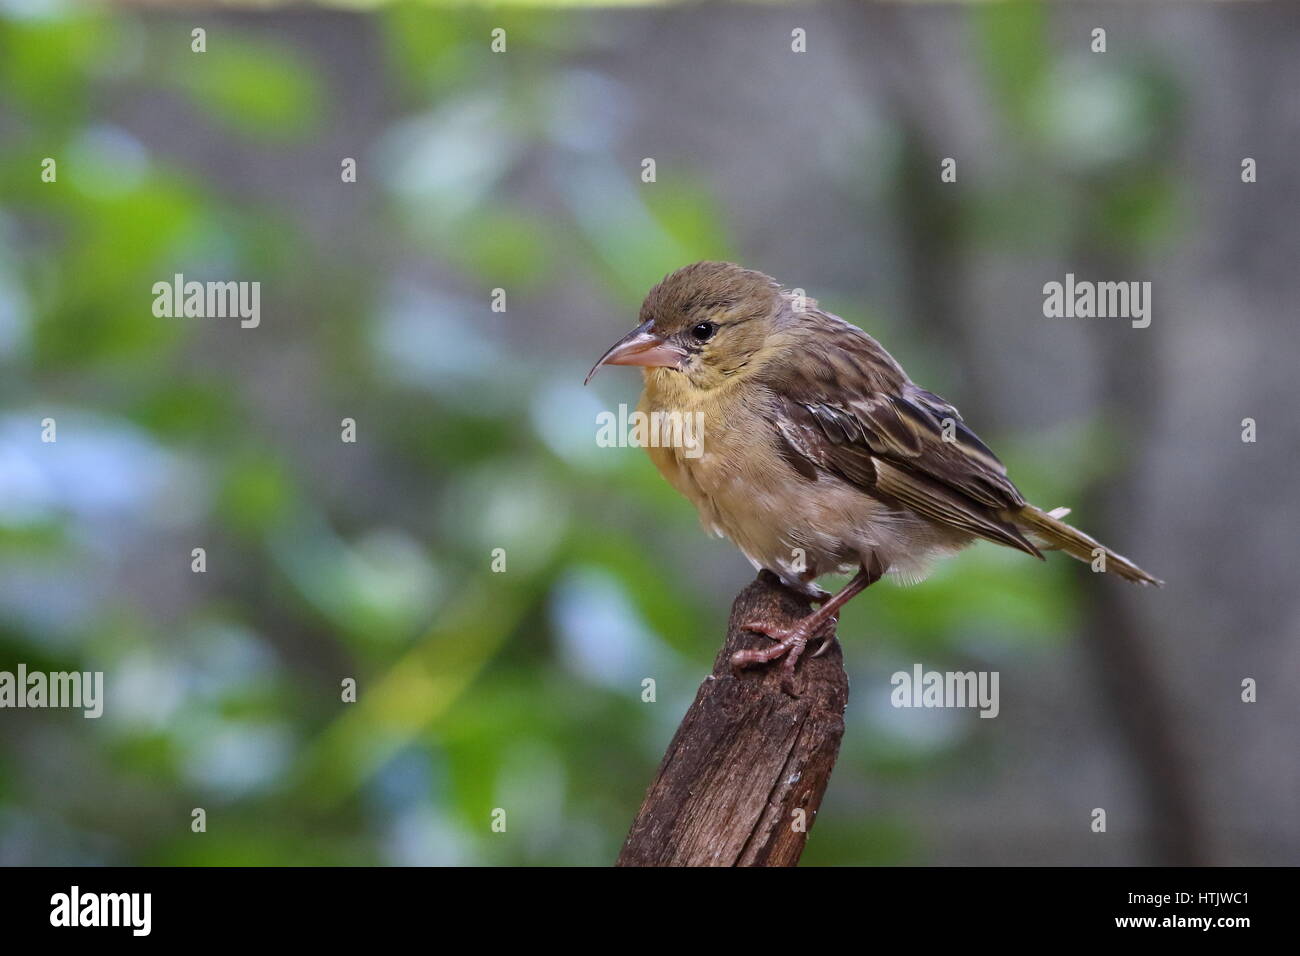 Imperfezione nella natura - un uccello con un deformato bill immagine in formato paesaggio con spazio di copia Foto Stock